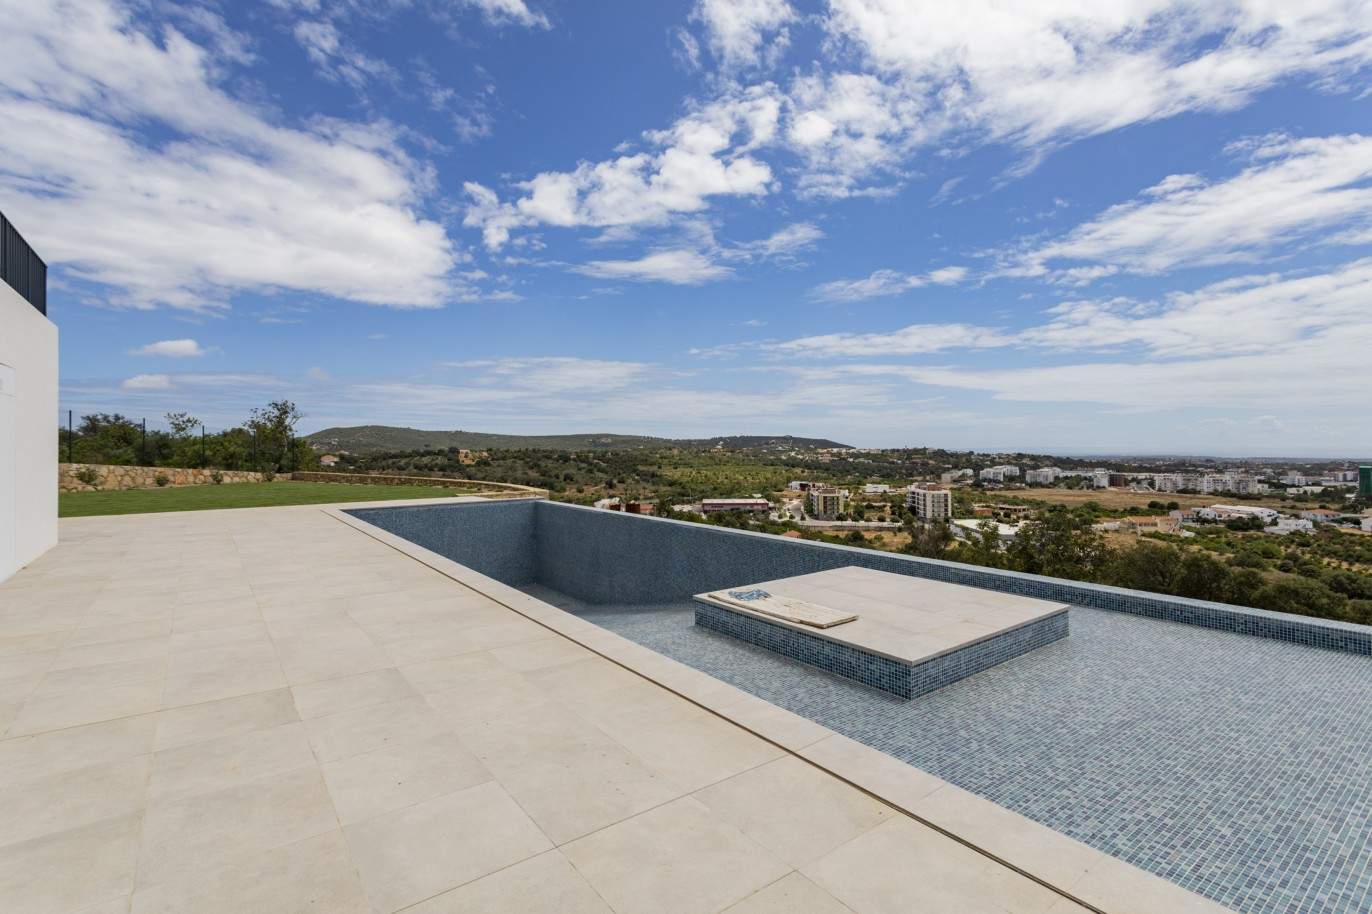 Moradia V4 com piscina, para venda em S.Clemente, Loulé, Algarve_201810